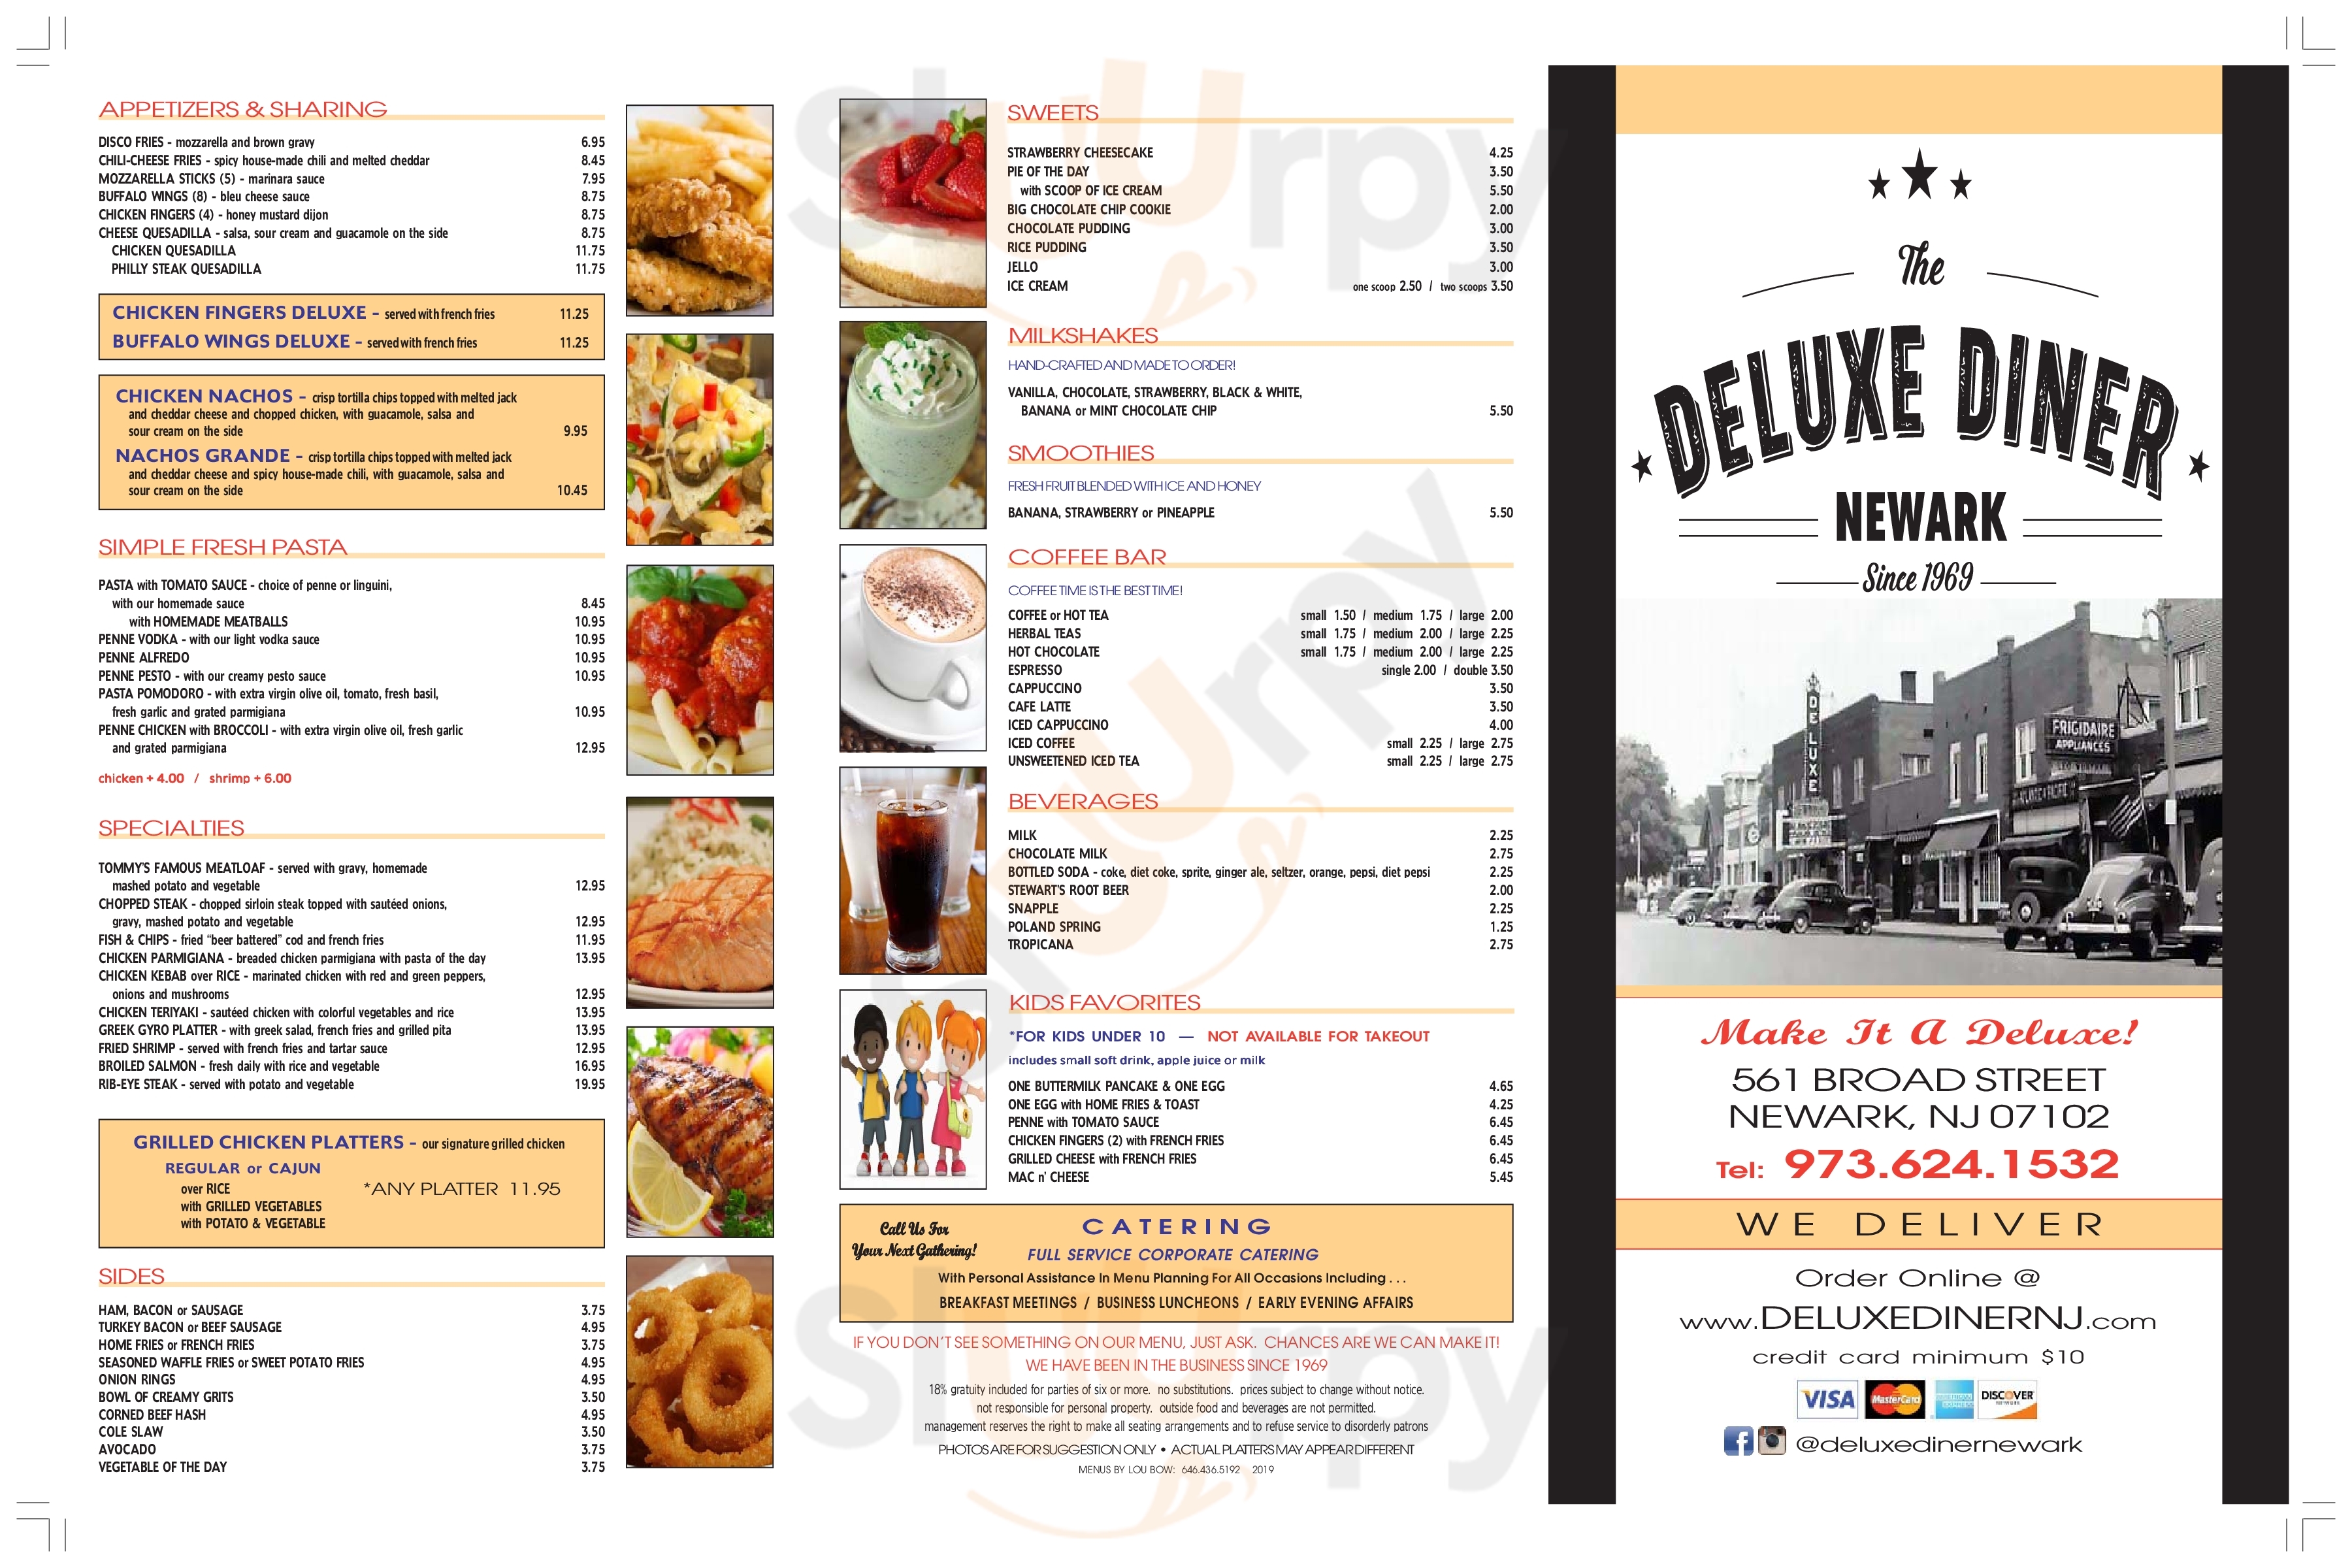 Deluxe Diner Newark Menu - 1